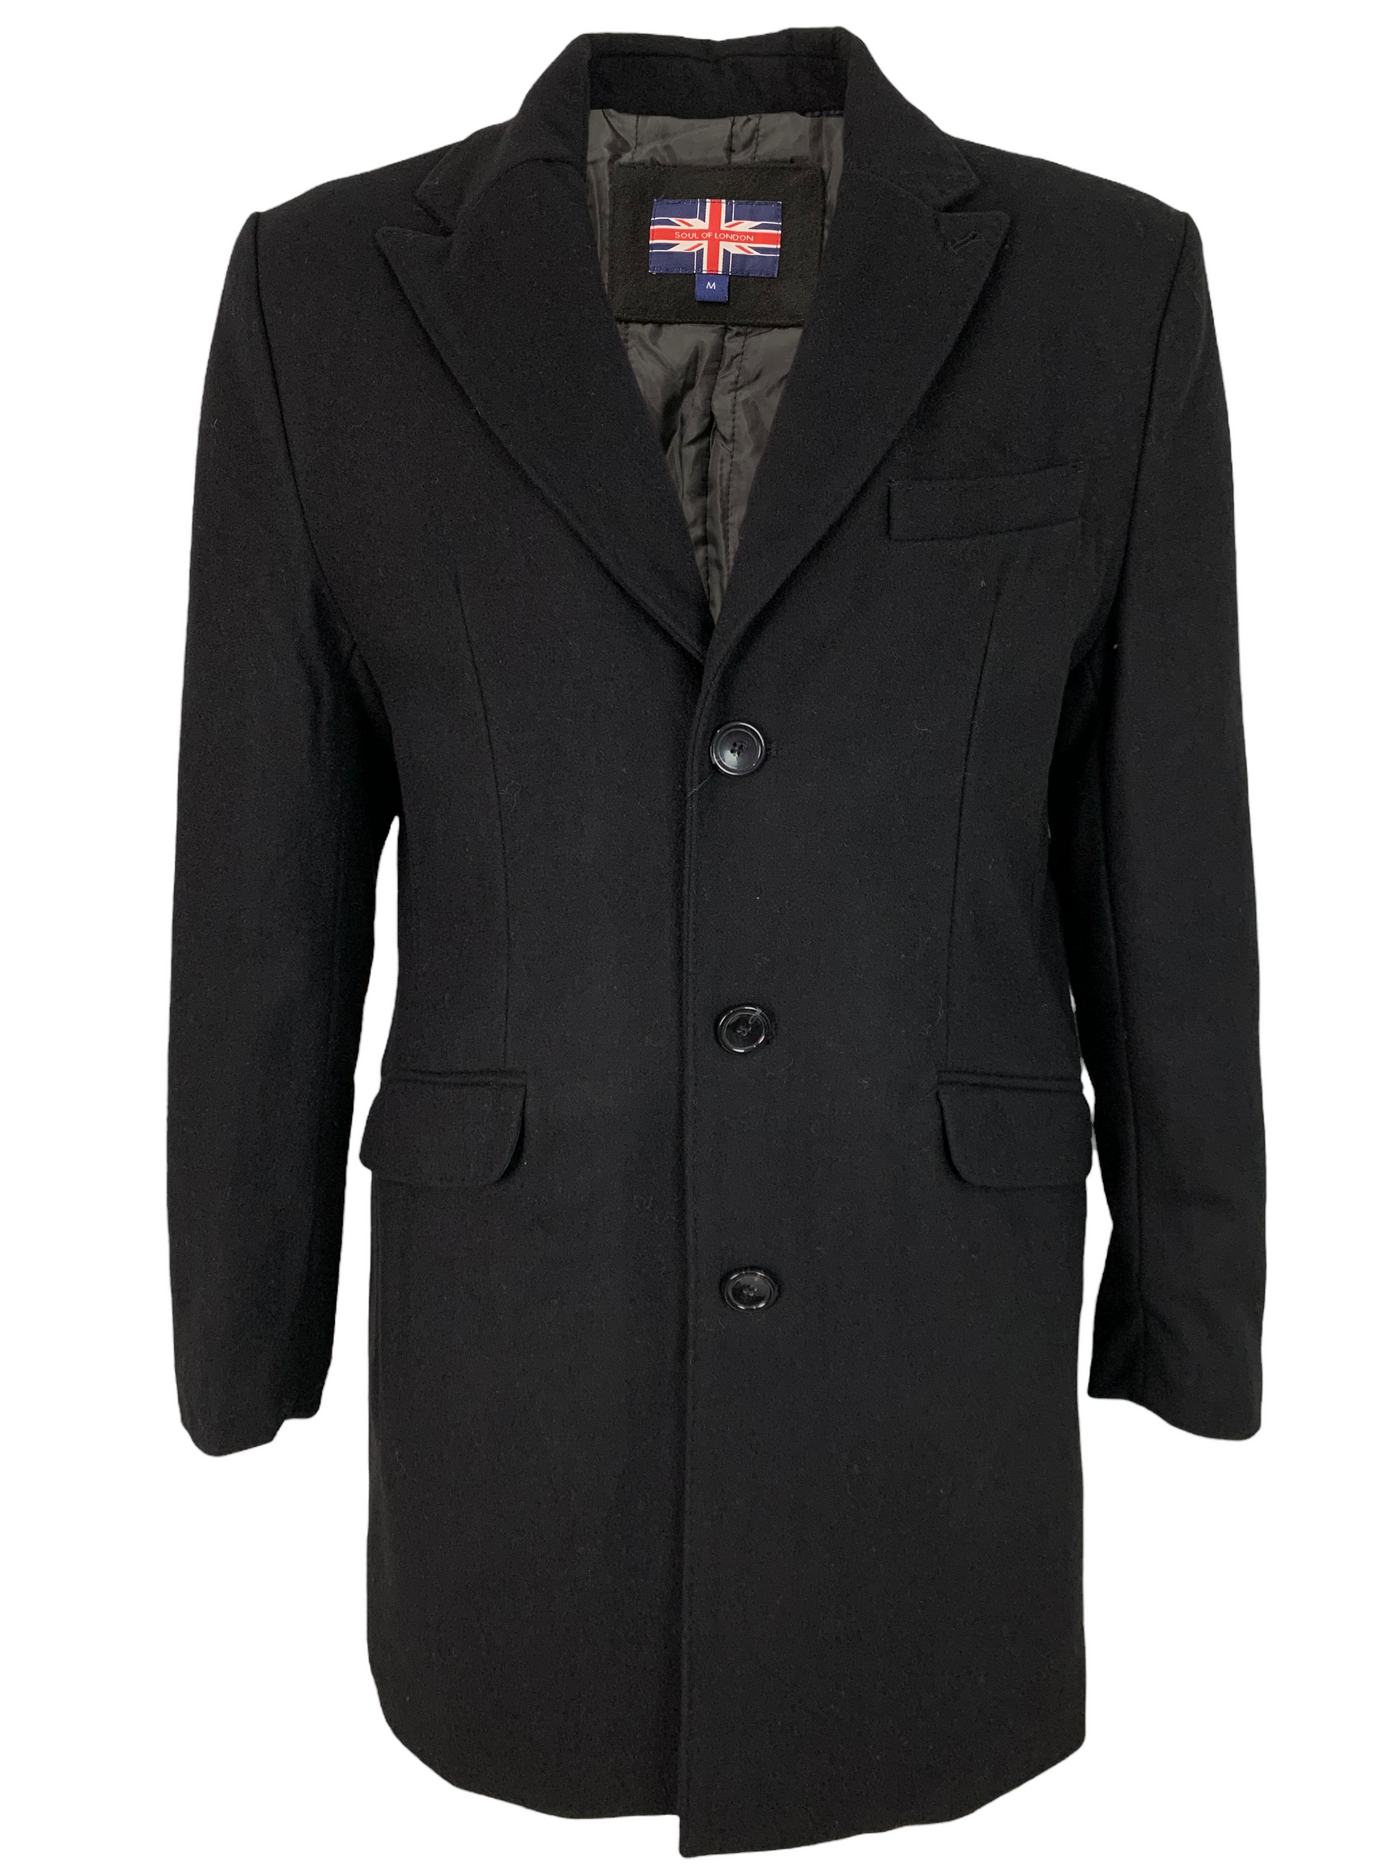 Manteau long noir en laine mélangée